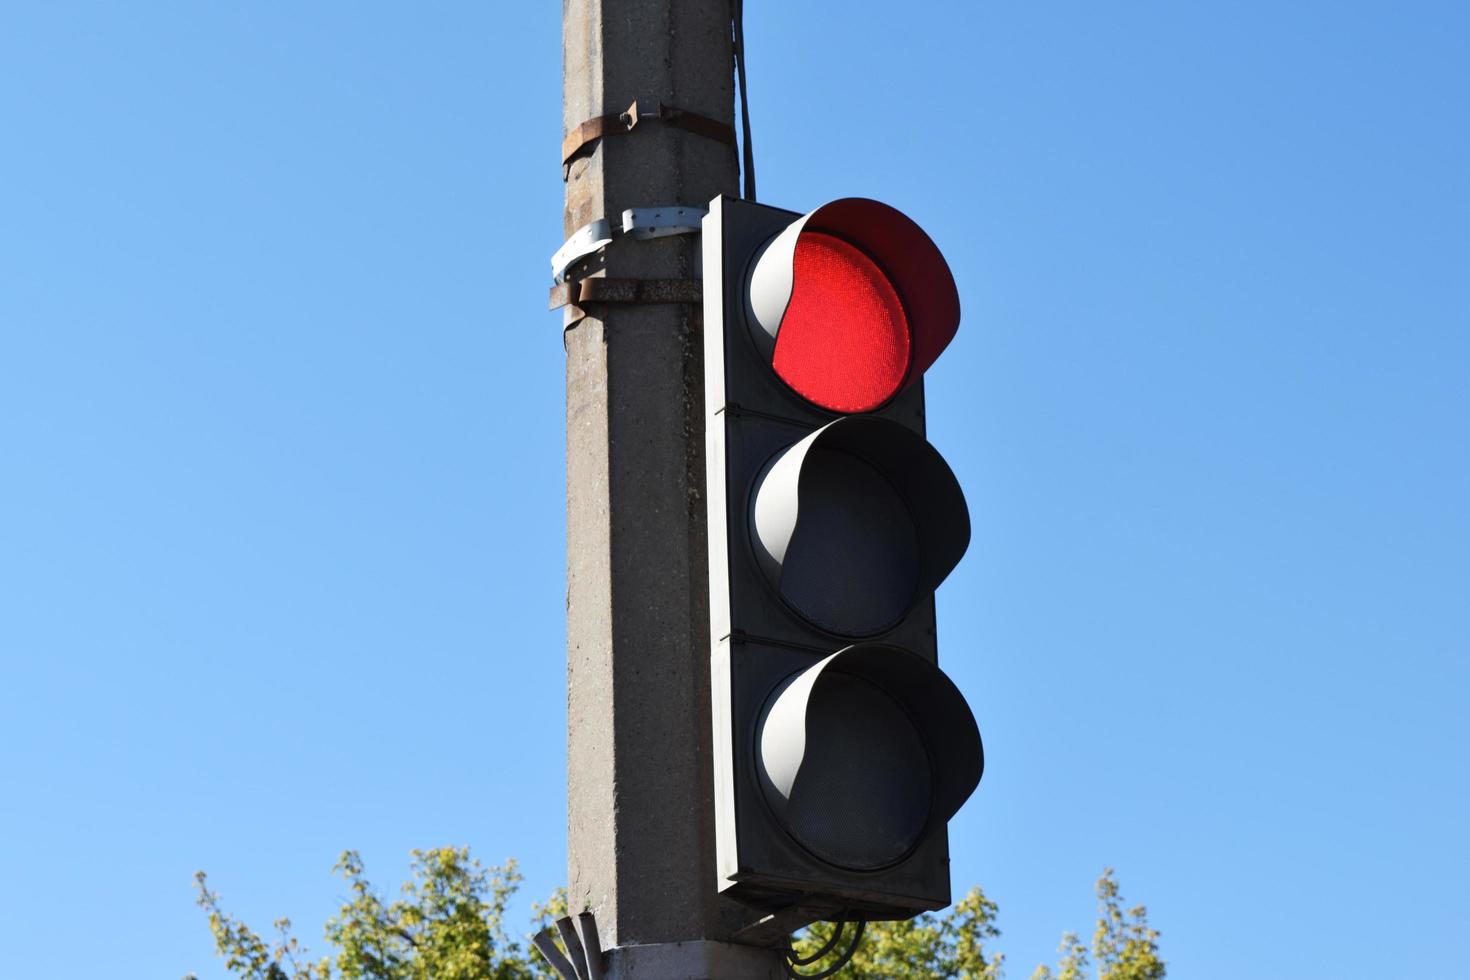 semaforo stradale tricolore con luce rossa accesa foto